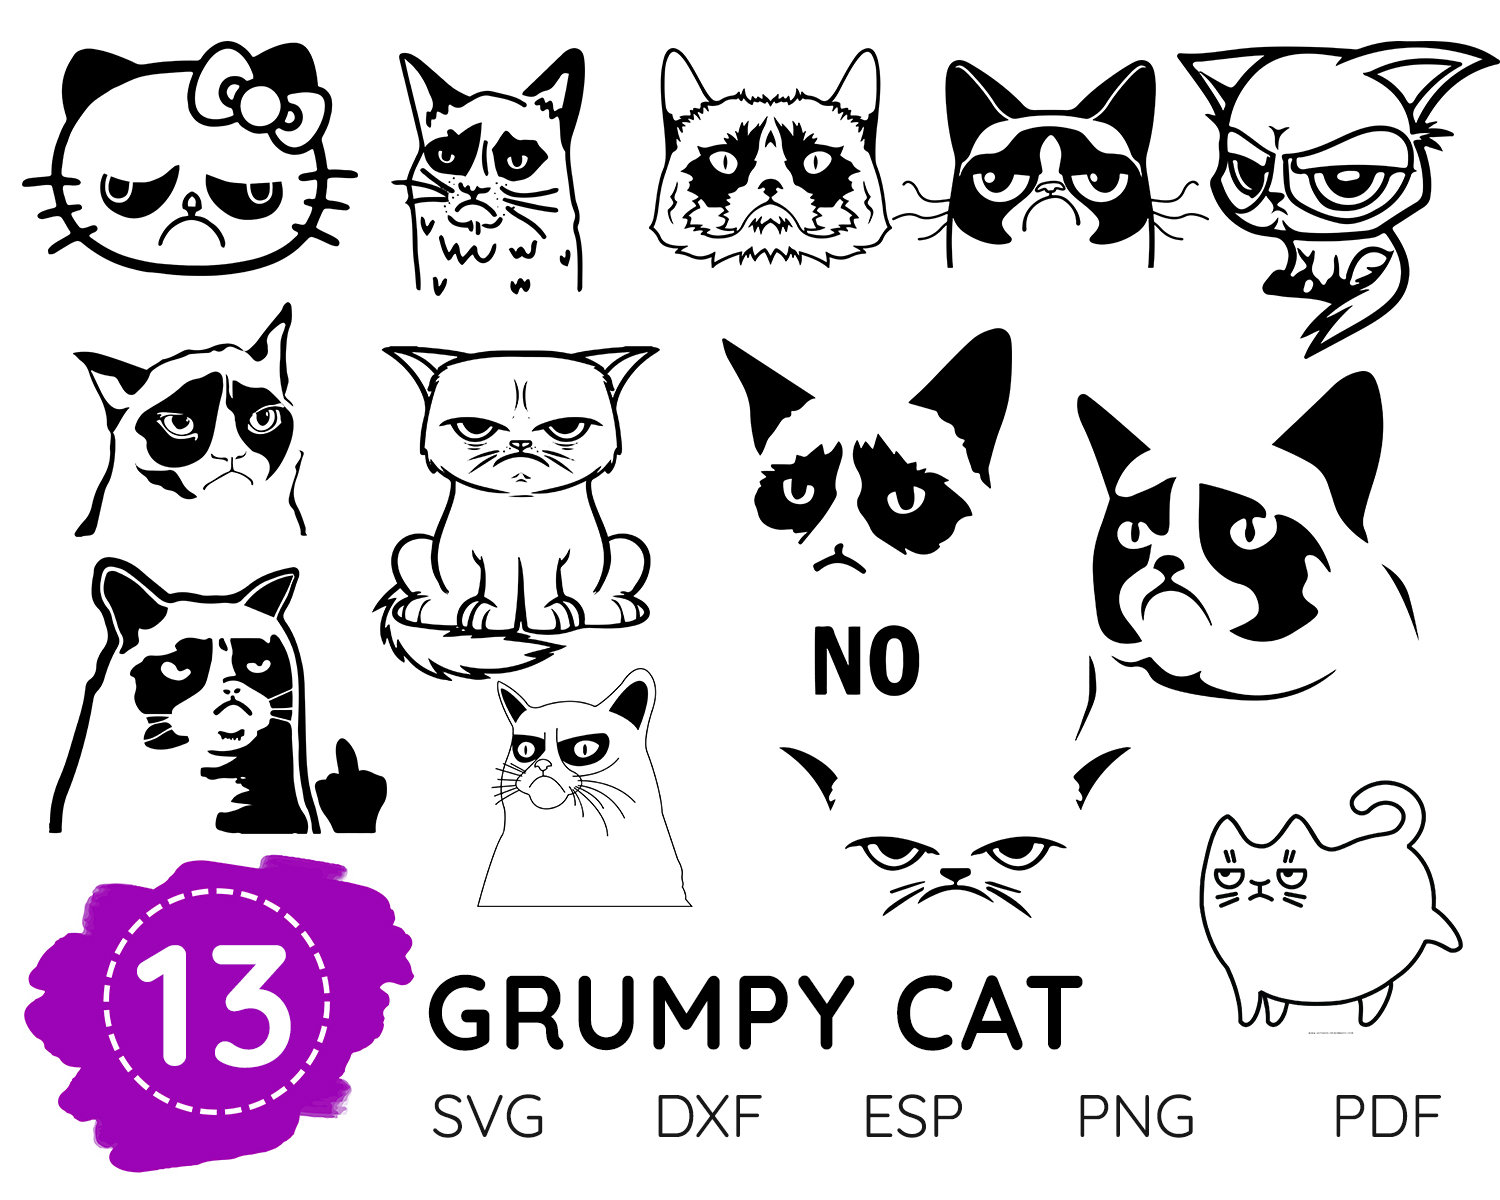 GRUMPY CAT SVG grumpy cat vector grumpy cat cut file grumpy | Etsy